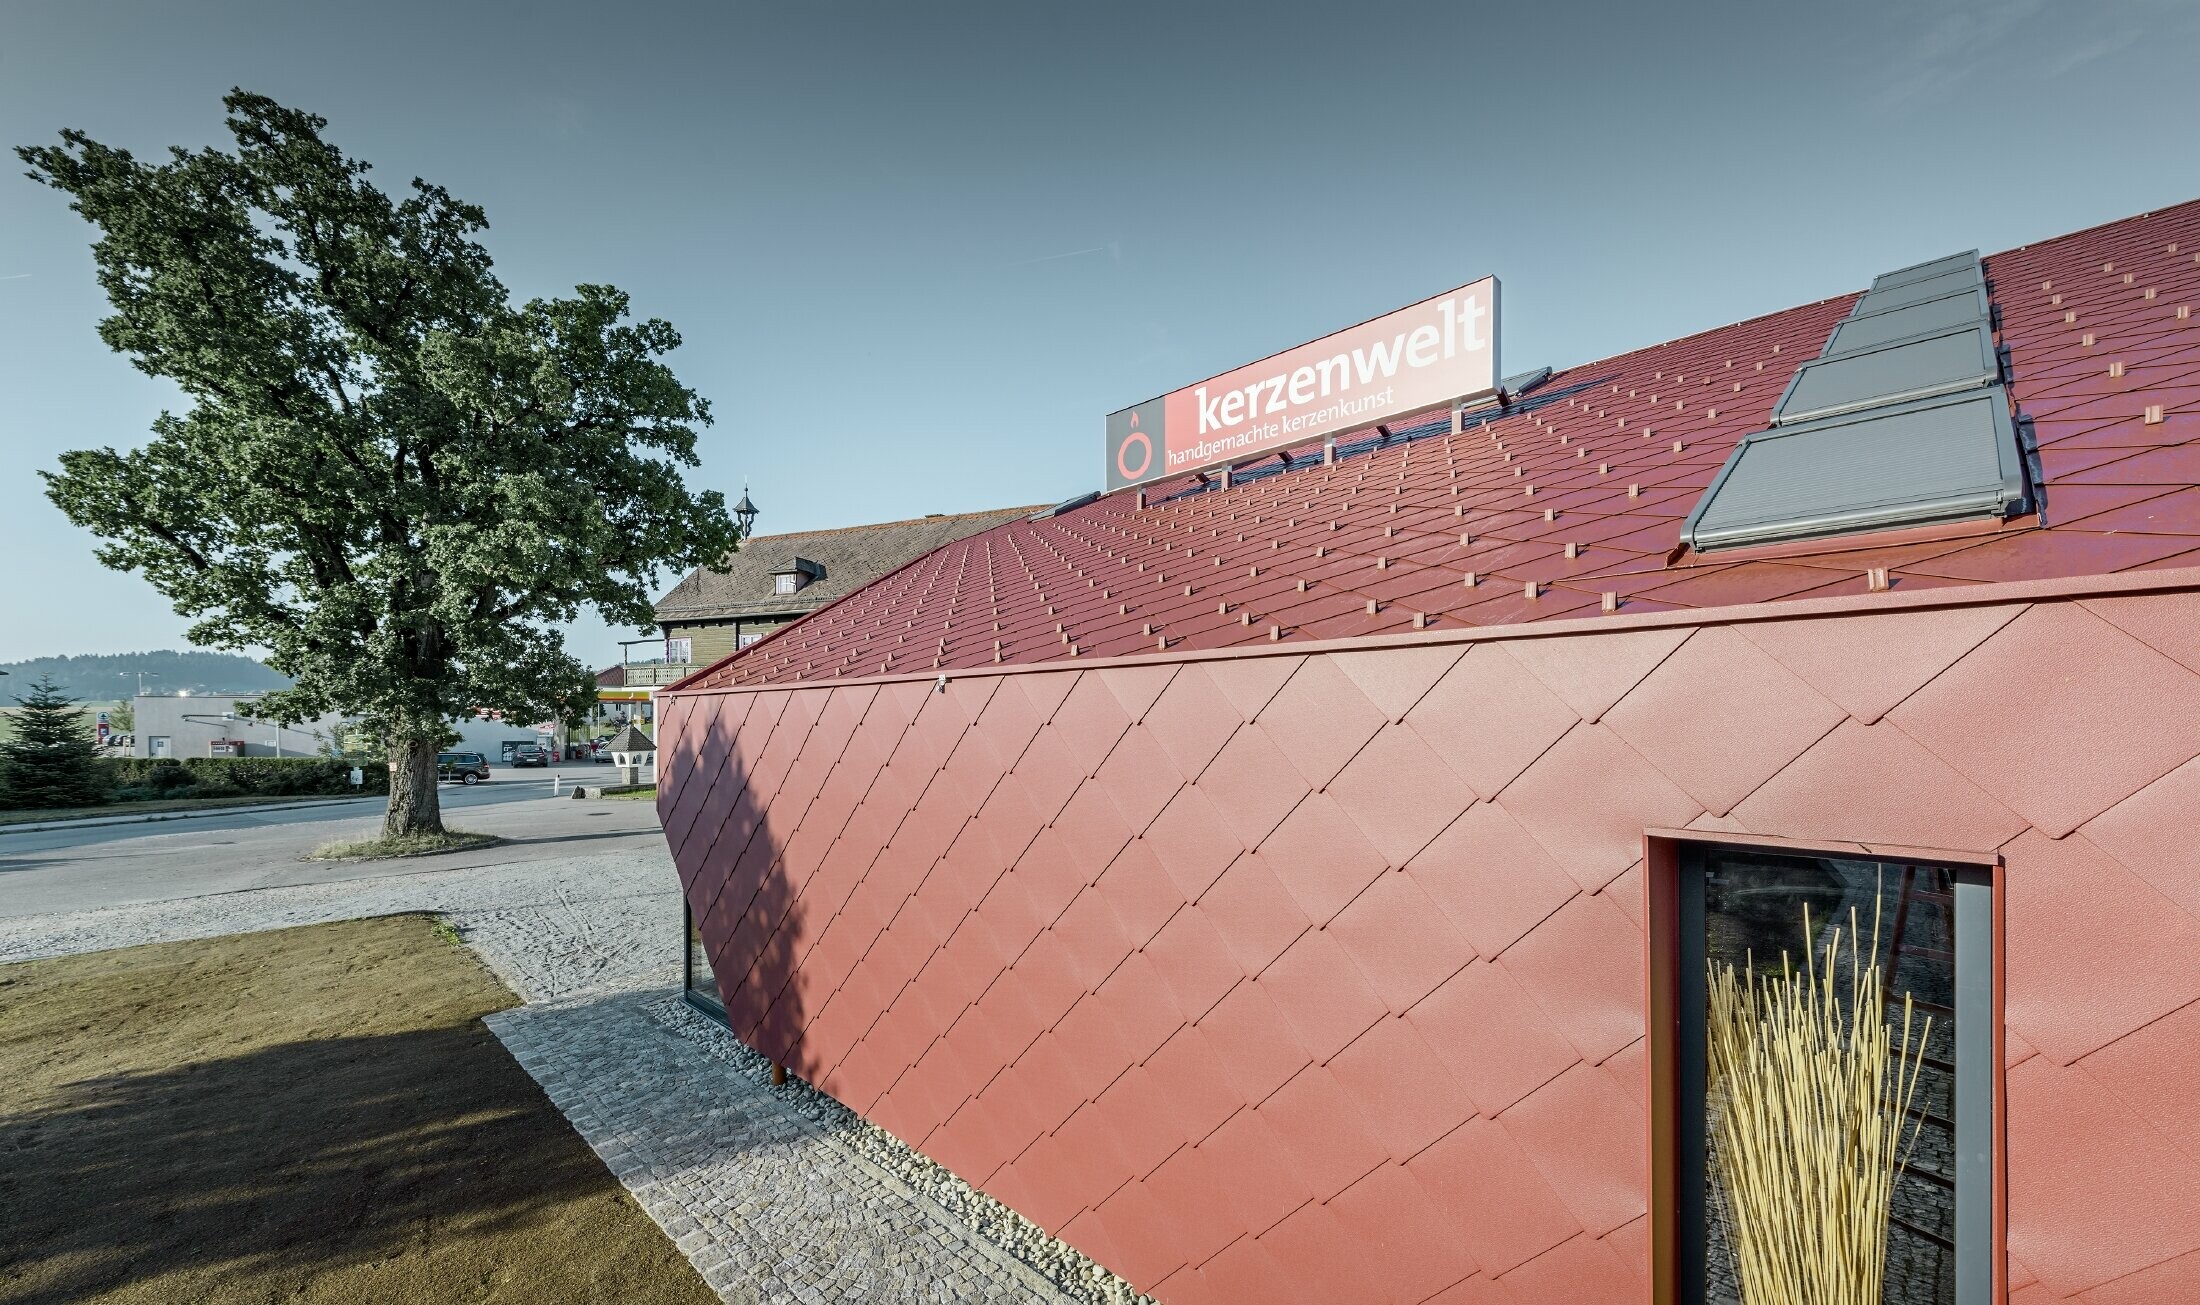 De Kerzenwelt in Schlägl is rondom opnieuw gedekt met de PREFA losange. De dakbedekking en de gevelbekleding zijn uitgevoerd met de losange 44x44 in oxiderood.